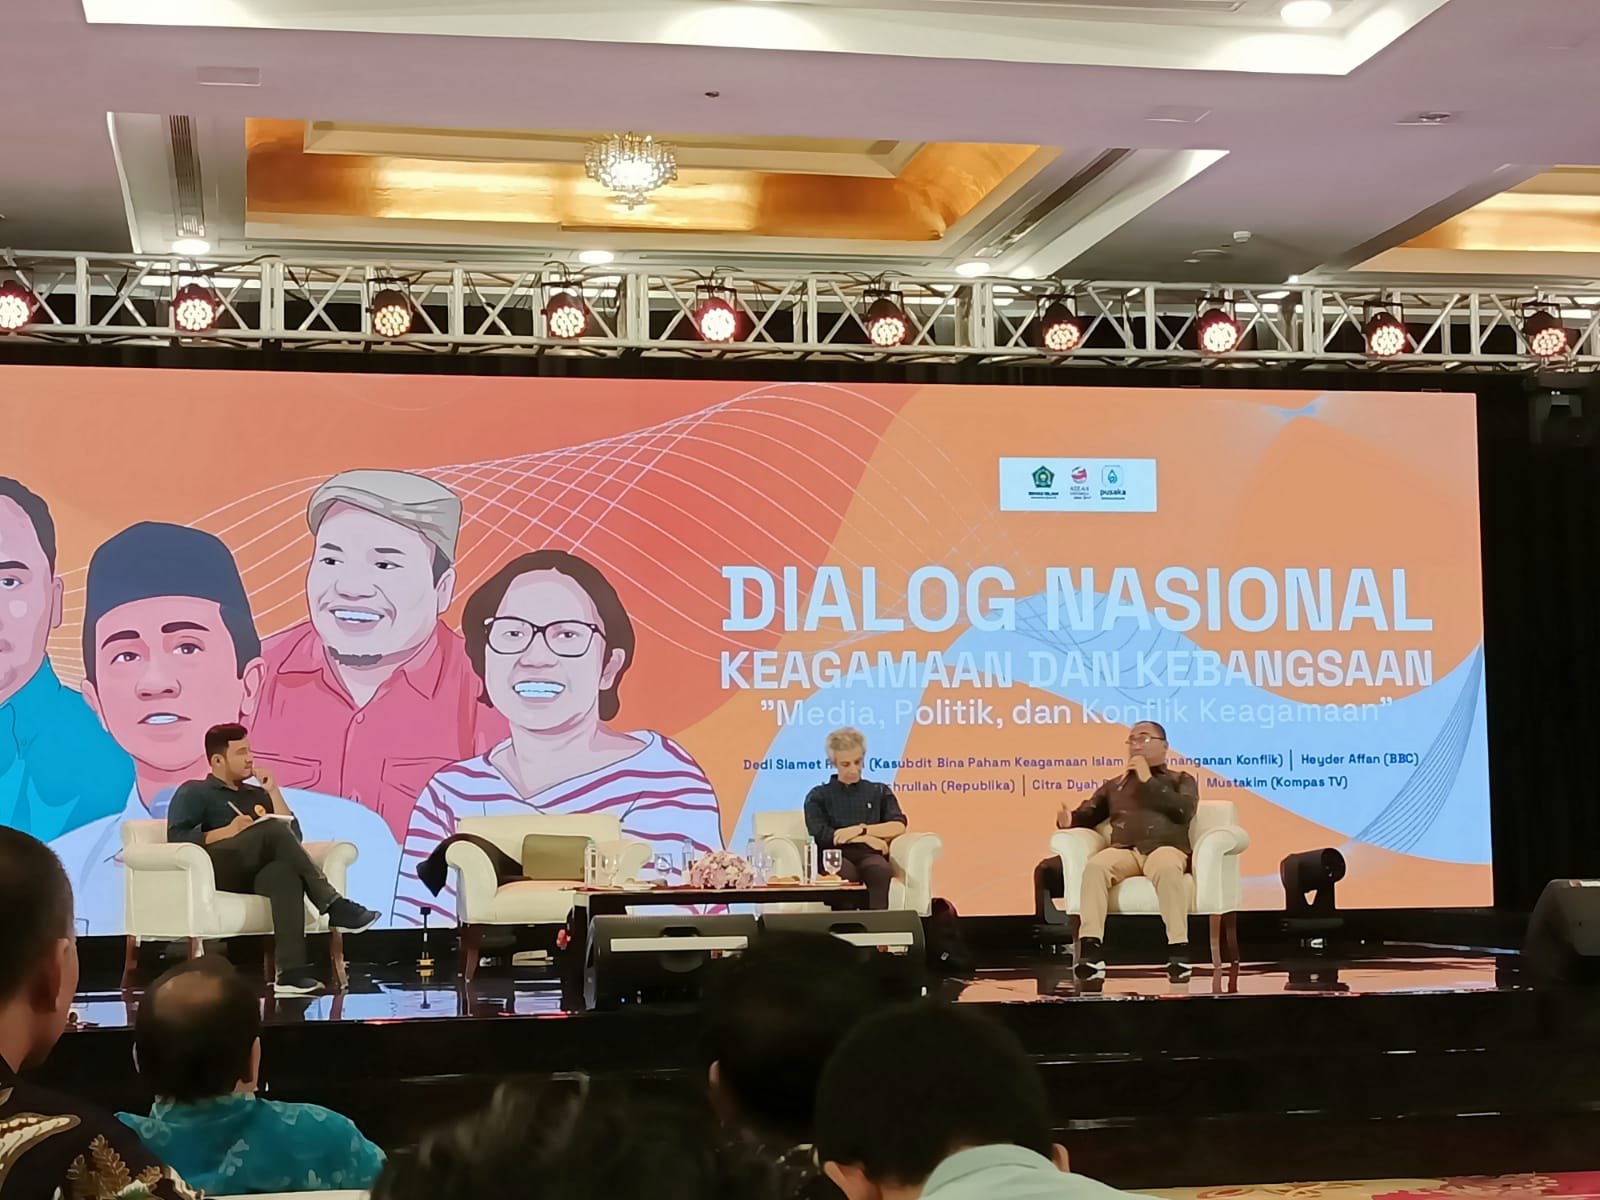 Buka Dialog Nasional Hadirkan Sejumlah Media, Kemenag: Media Perlu Bijak dan Kritis Meliput Konflik Keagamaan